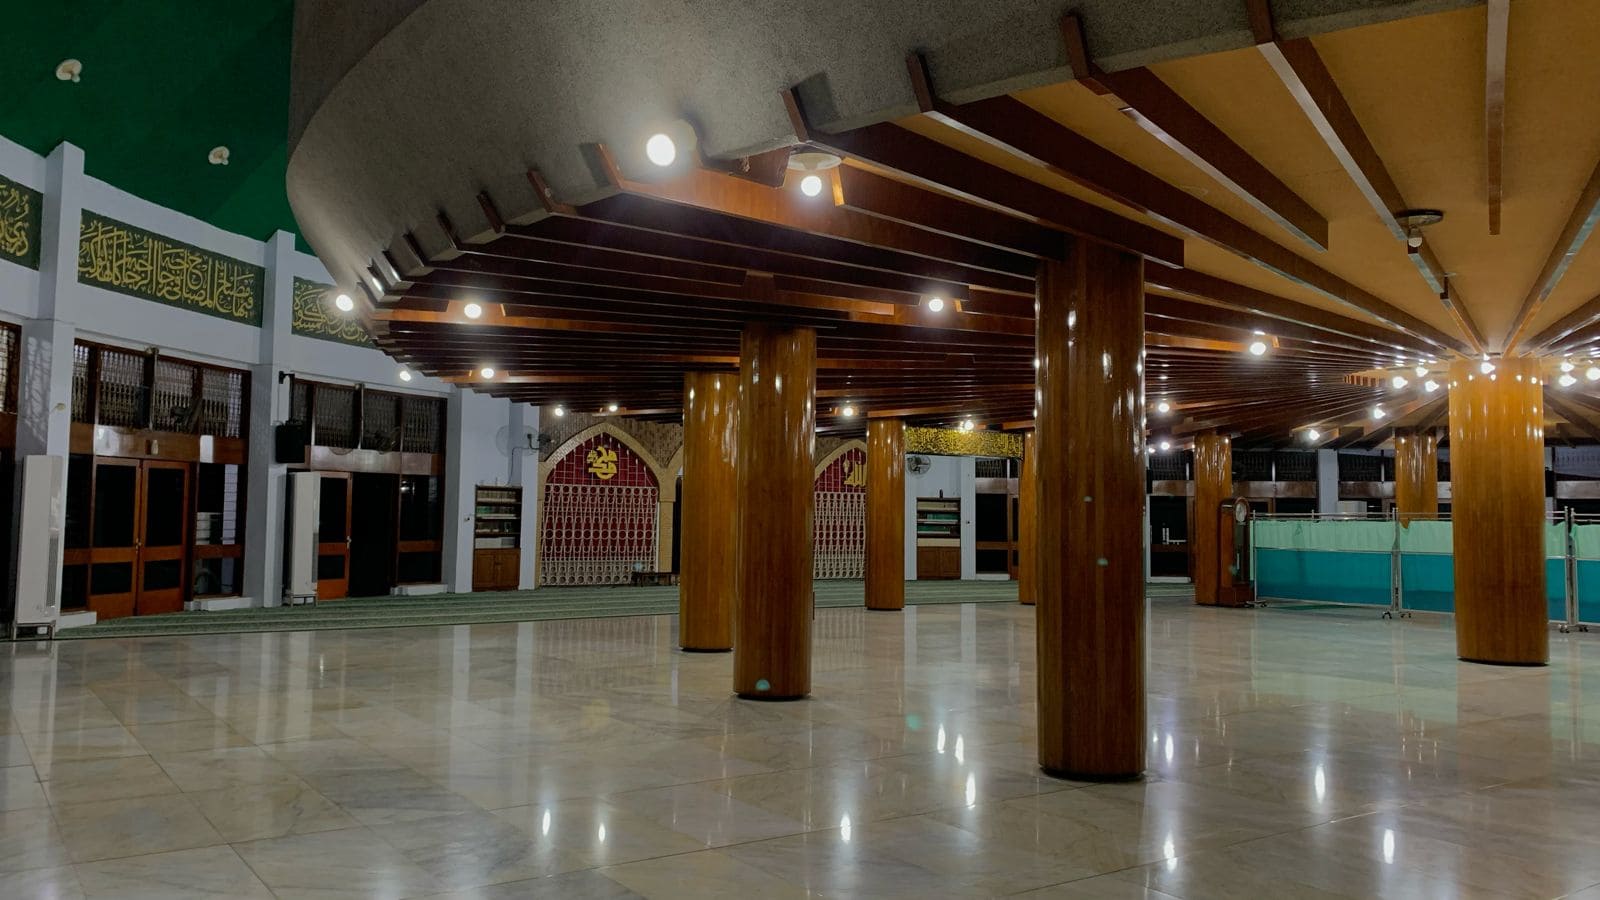 Wisata religi Masjid Jami’ Al Baitul Amien di Jember.